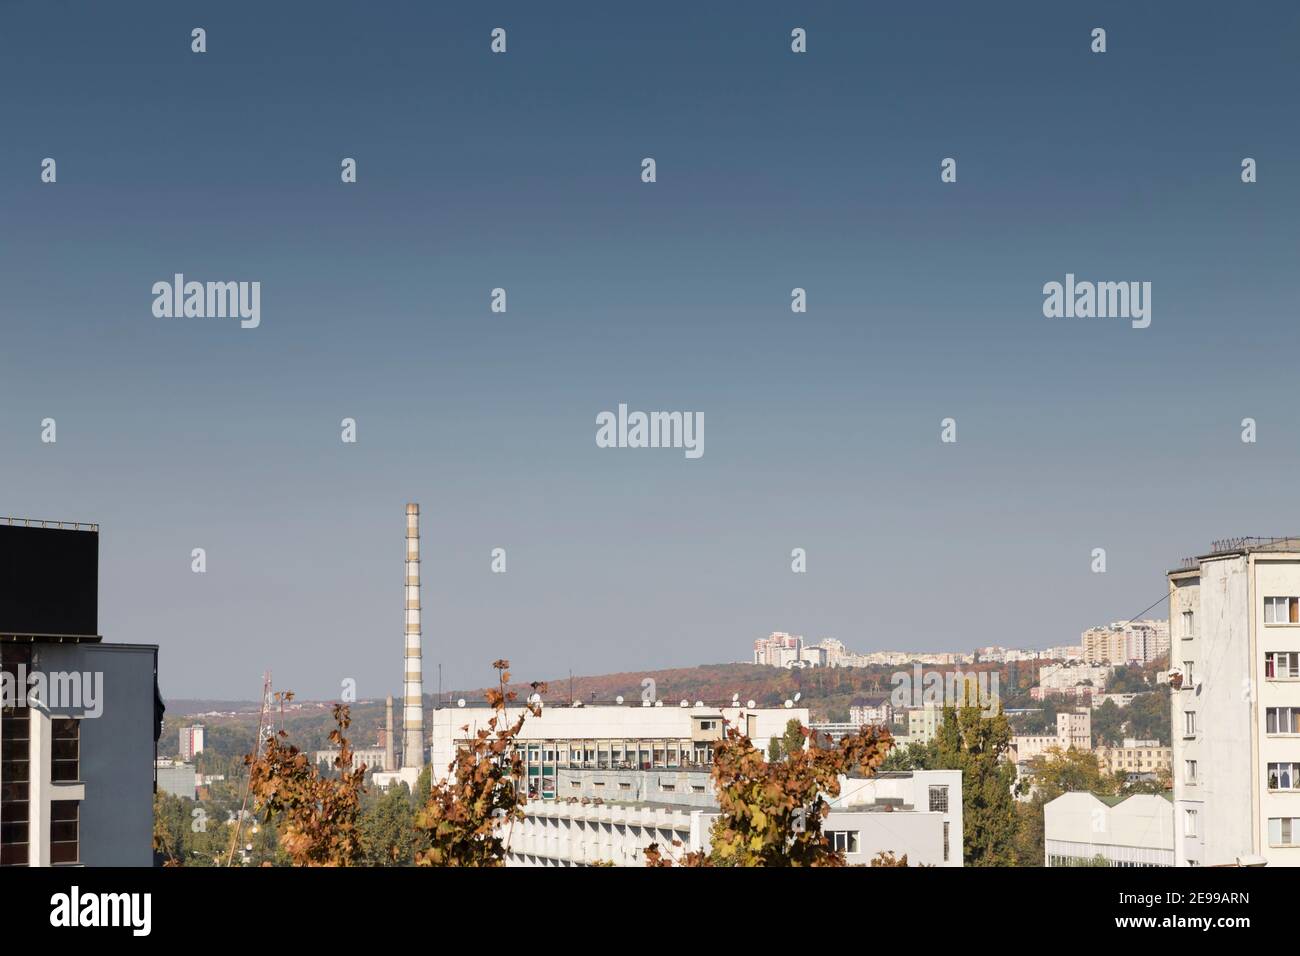 Vista dall'alto dei camini delle piante e degli edifici della città. Il distict di Ciocana si trova sullo sfondo di questa immagine. Foto Stock